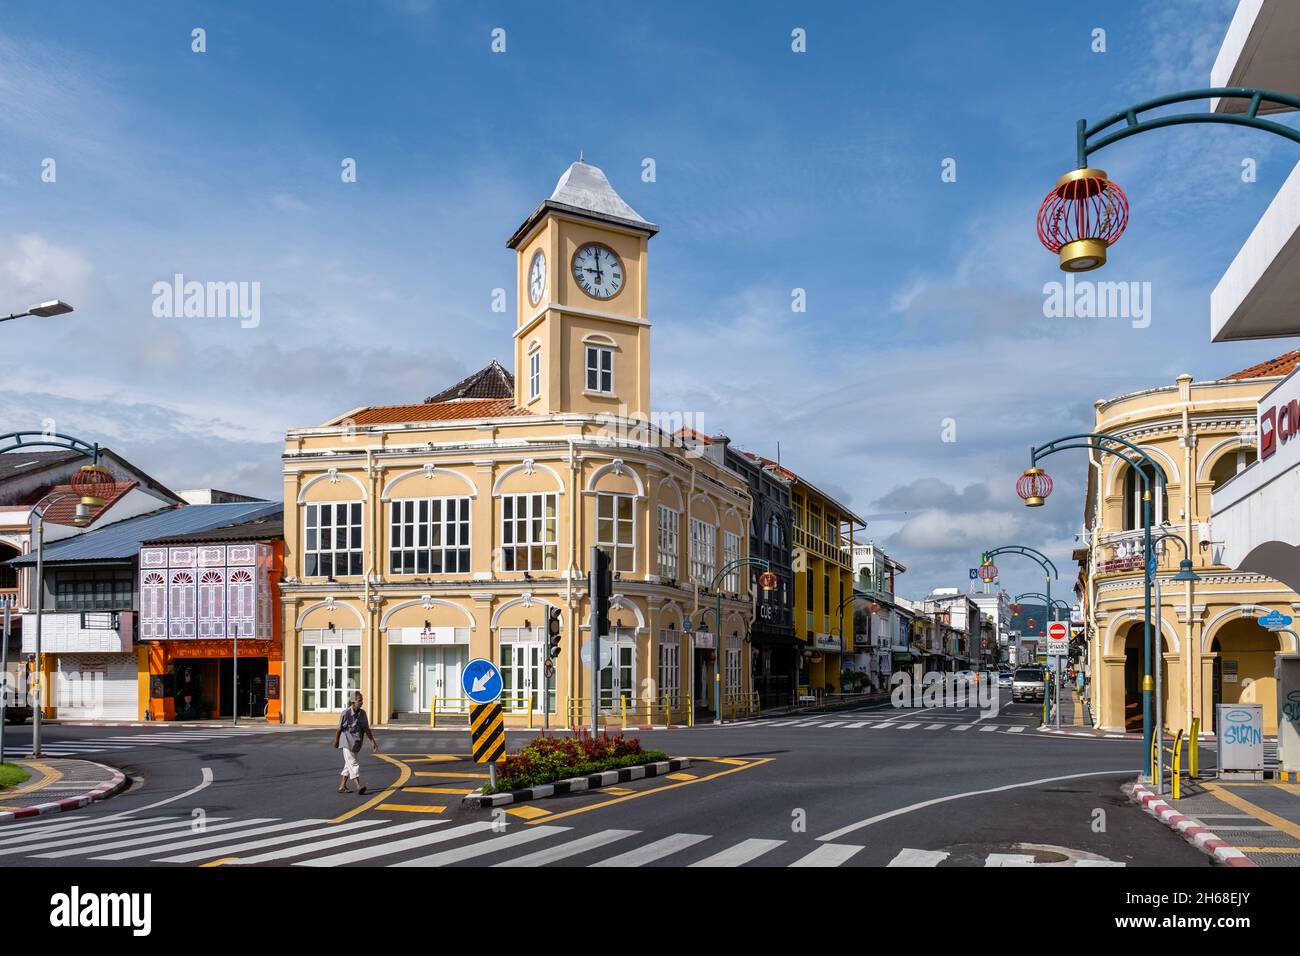 Phuket Thaïlande 2021 novembre, la vieille ville de Phuket une matinée ensoleillée avec des bâtiments colorés rue dans le style portugais Romani dans la ville de Phuket.Aussi appelé Chinatown ou la vieille ville. Les gens dans la rue dans la vieille ville Banque D'Images